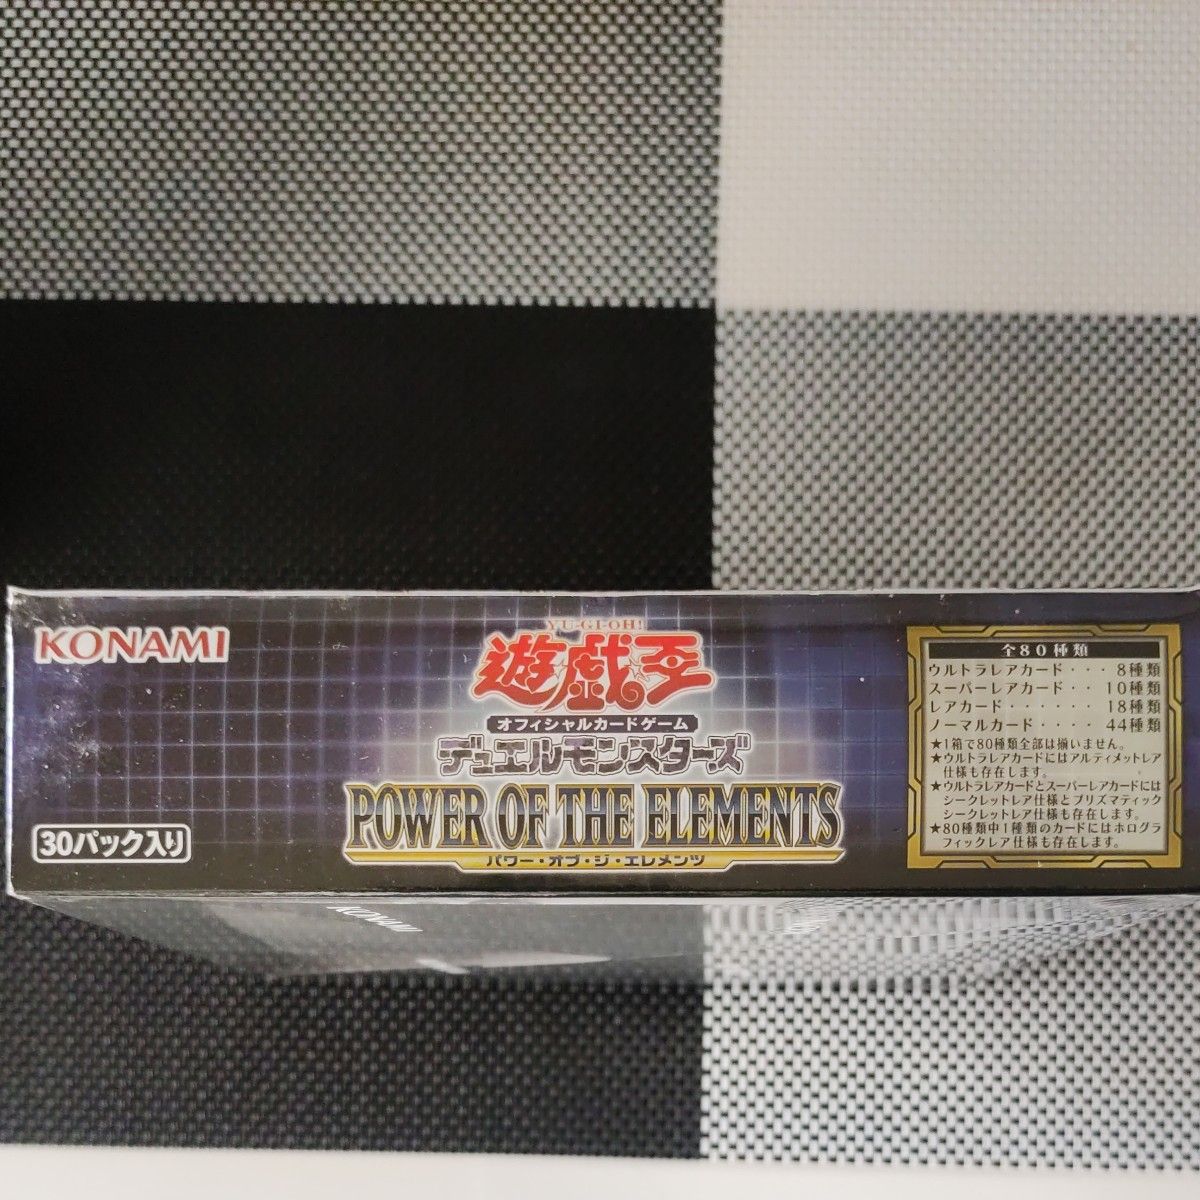 遊戯王 デュエルモンスターズ POWER OF THE ELEMENTS  初回生産BOX